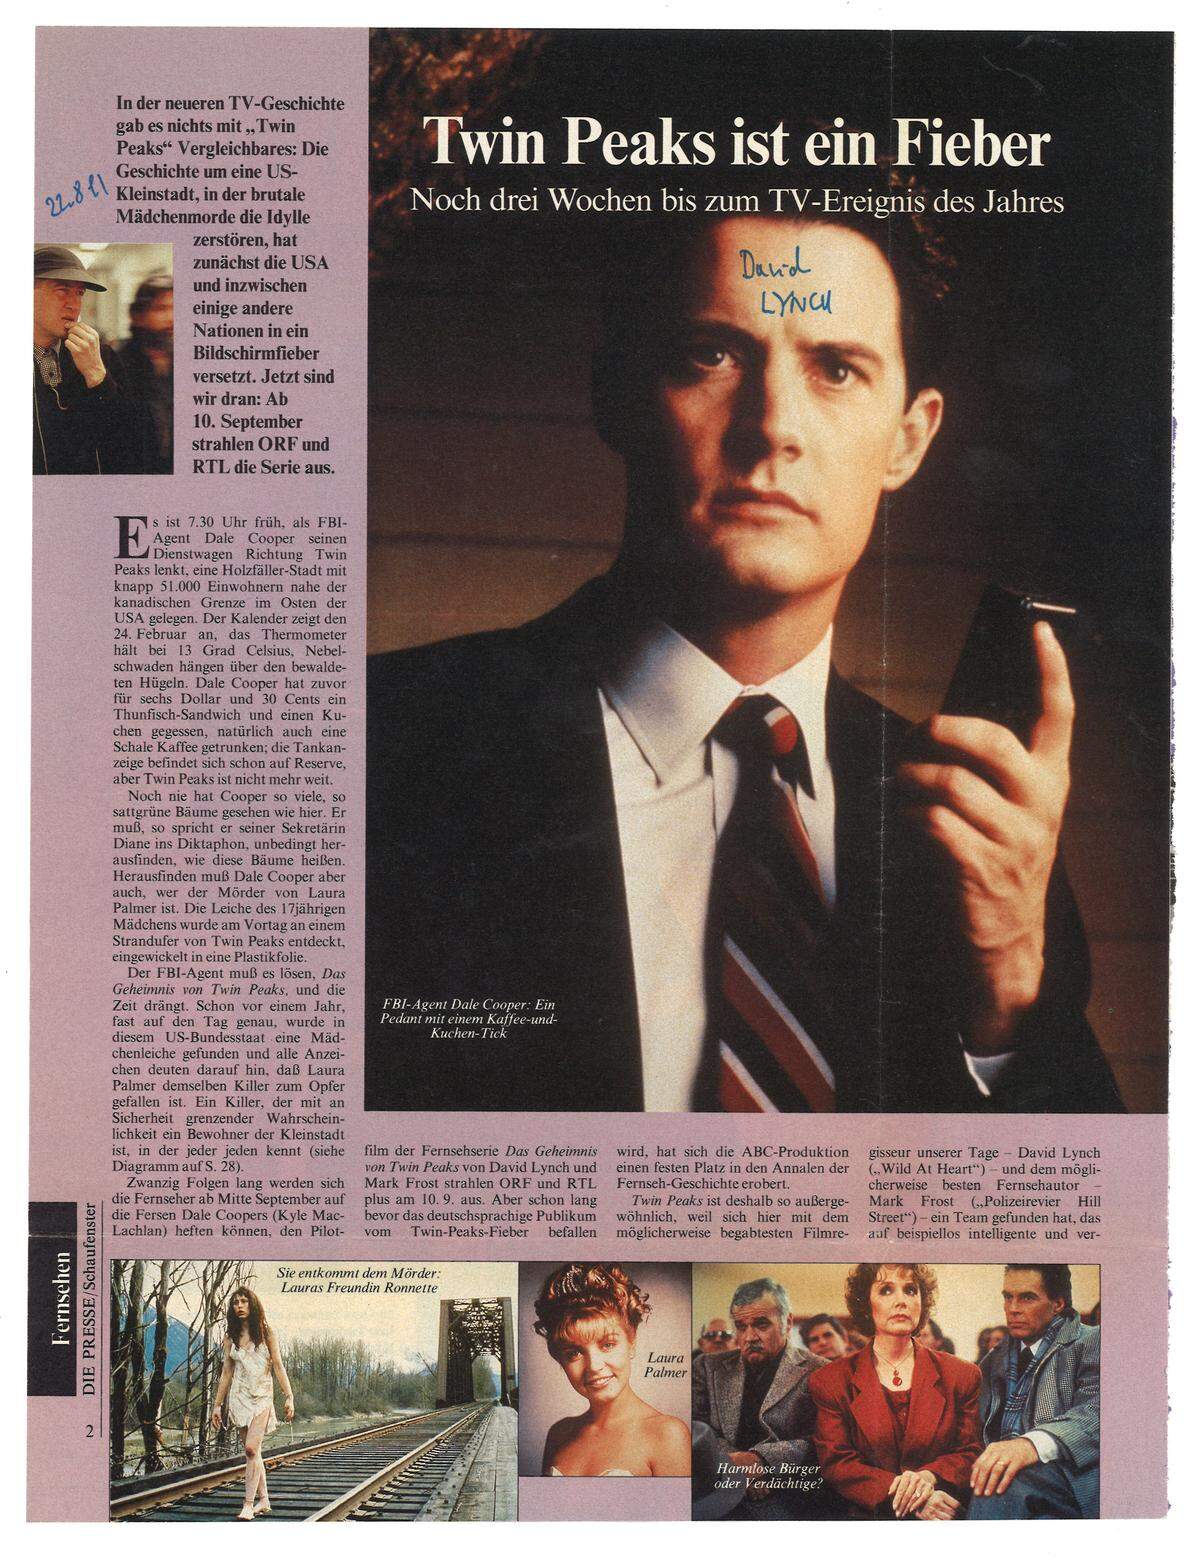 Im Text zur Grafik des "Schaufenster" hieß es am 22. August 1991: "Twin Peaks ist deshalb so außergewöhnlich, weil sich hier mit dem möglicherweise begabtesten Filmregisseur unserer Tage - David Lynch - und dem möglicherweise besten Fernsehautor - Mark Frost - ein Team gefunden hat, das auf beispiellos intelligente und verspielte Weise mit den Stilmitteln herkömmlicher TV-Soap-Operas hantiert. Was (...) hier entstand, ist eine auch vom 'Dallas'-Publikum konsumierbare Mischung aus Hitchcock und Buñuel." Autor des Textes war Bernhard Praschel (Kürzel: pra), der seit 1992 Redakteur beim "Kurier", seit 1995 Autor in der "Freizeit" des "Kurier" ist.